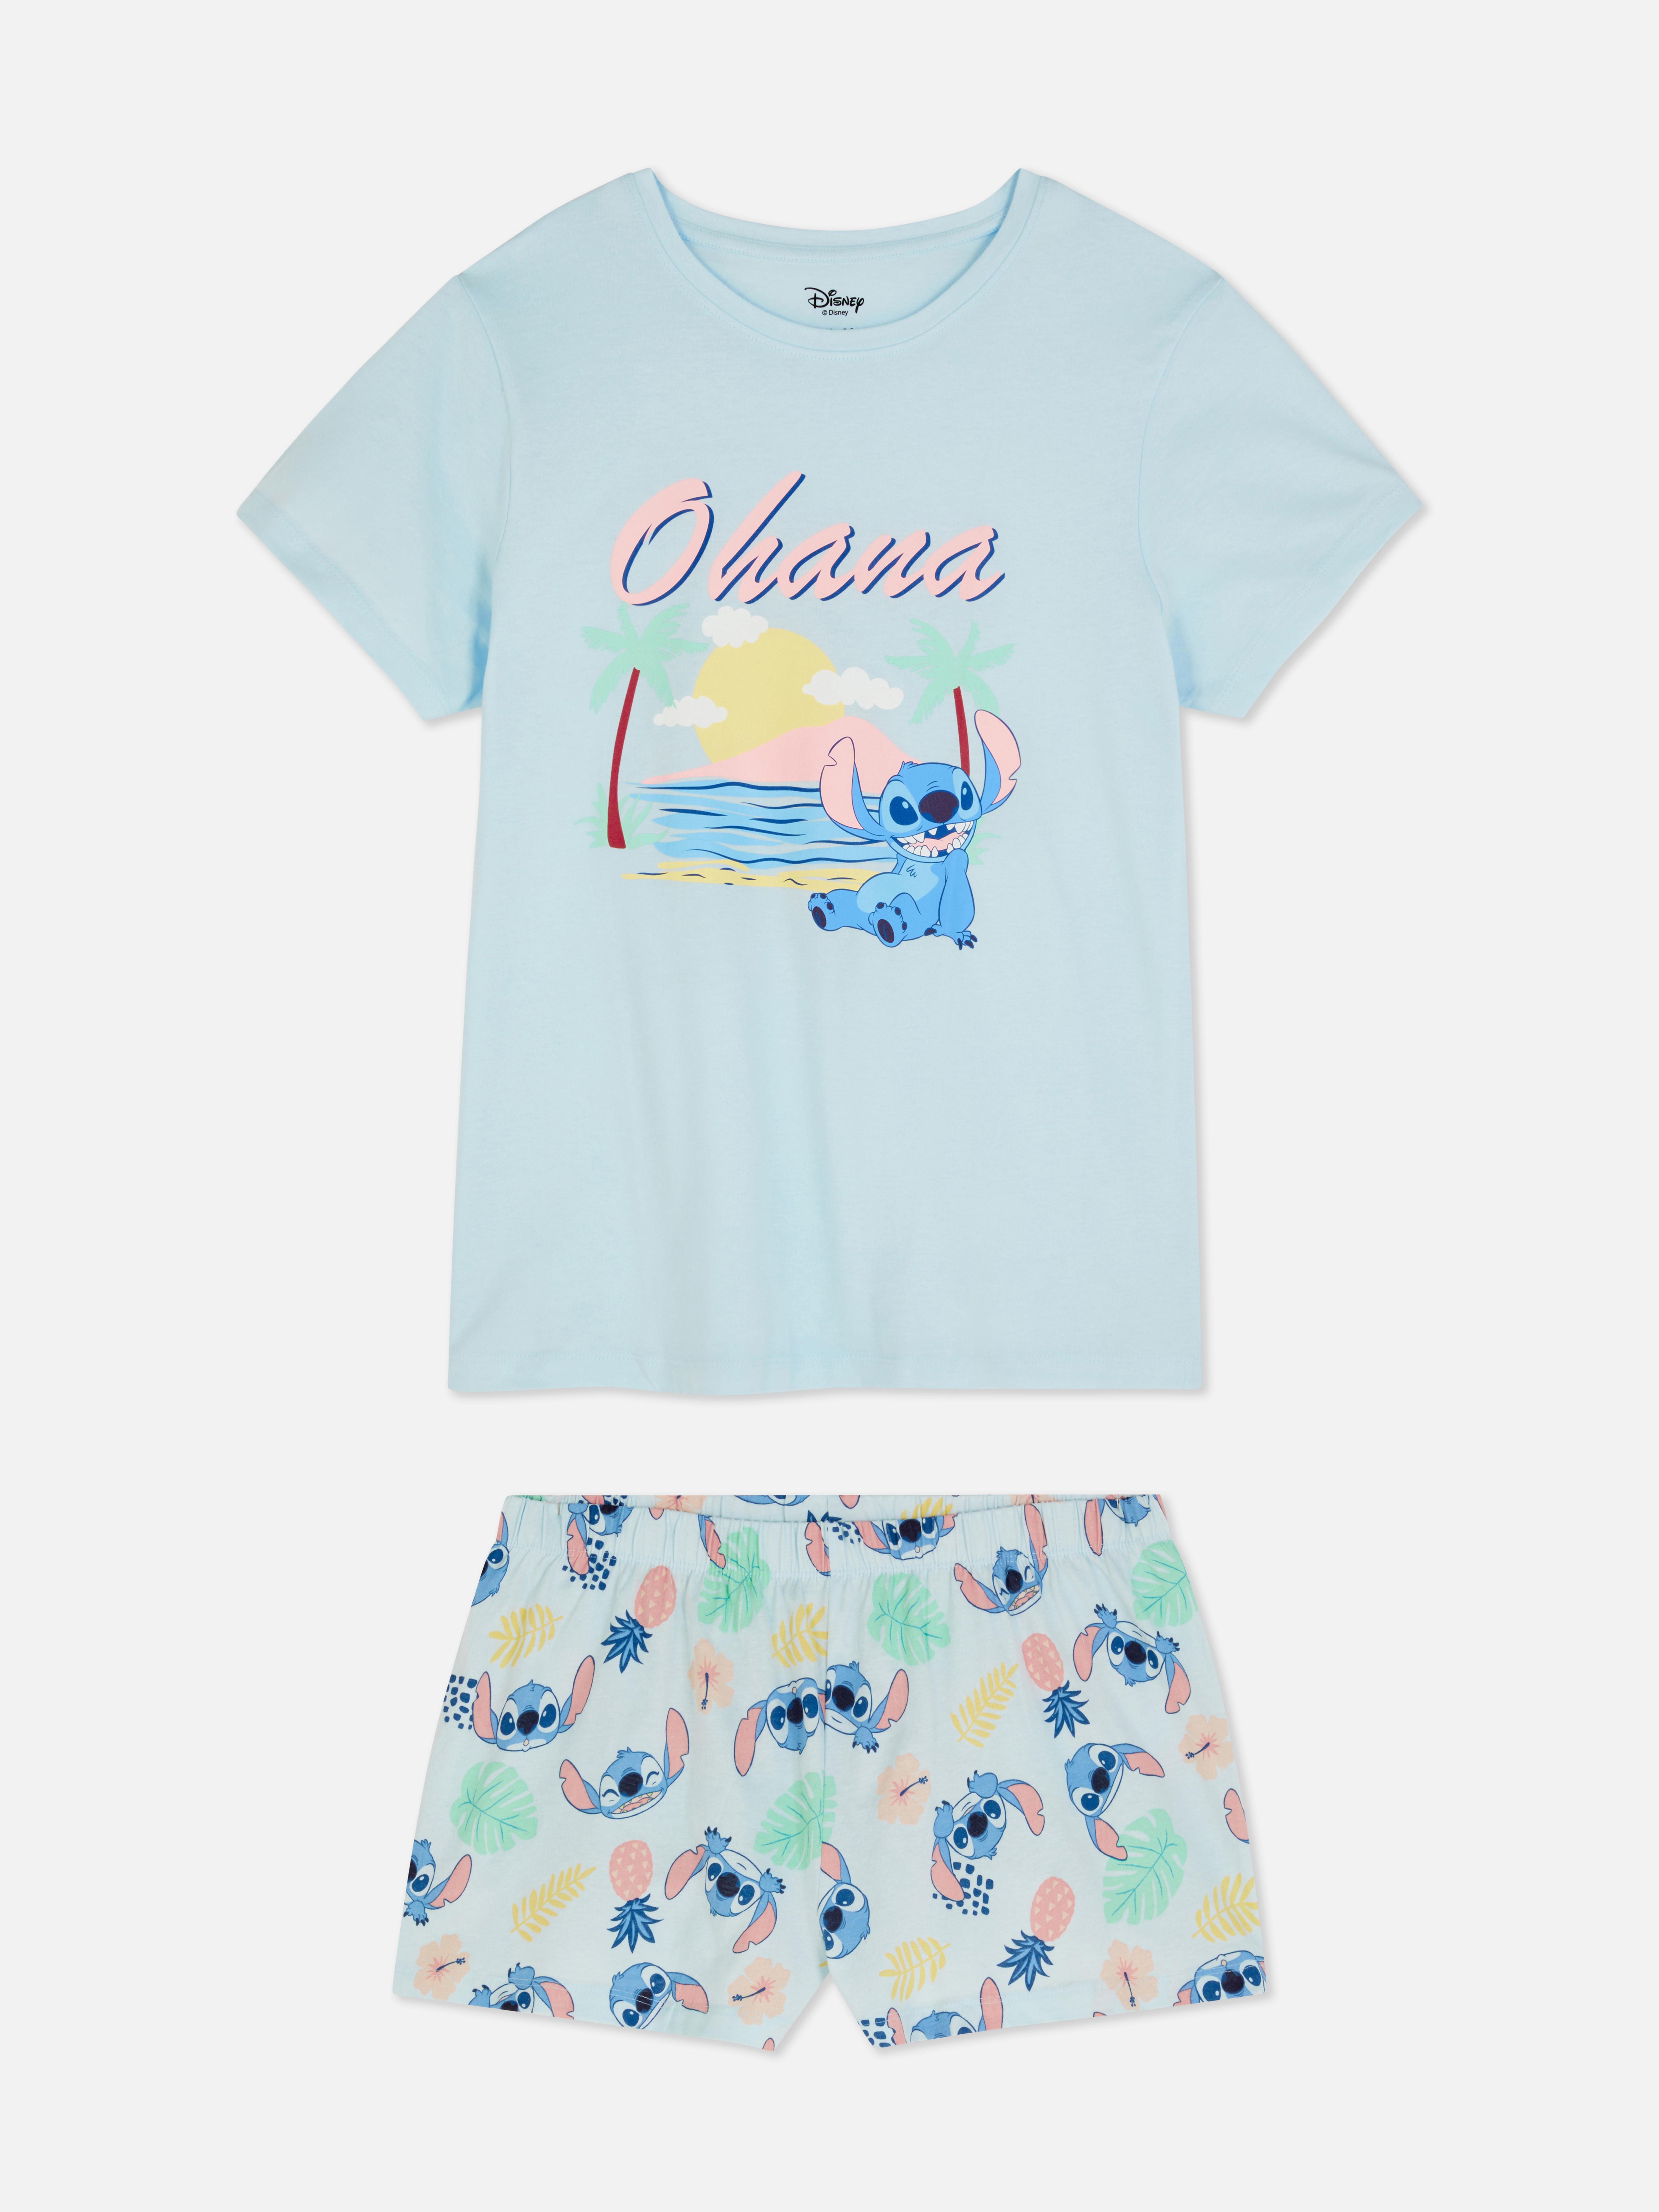 Disney’s Characters T-Shirt and Shorts Pajama Set